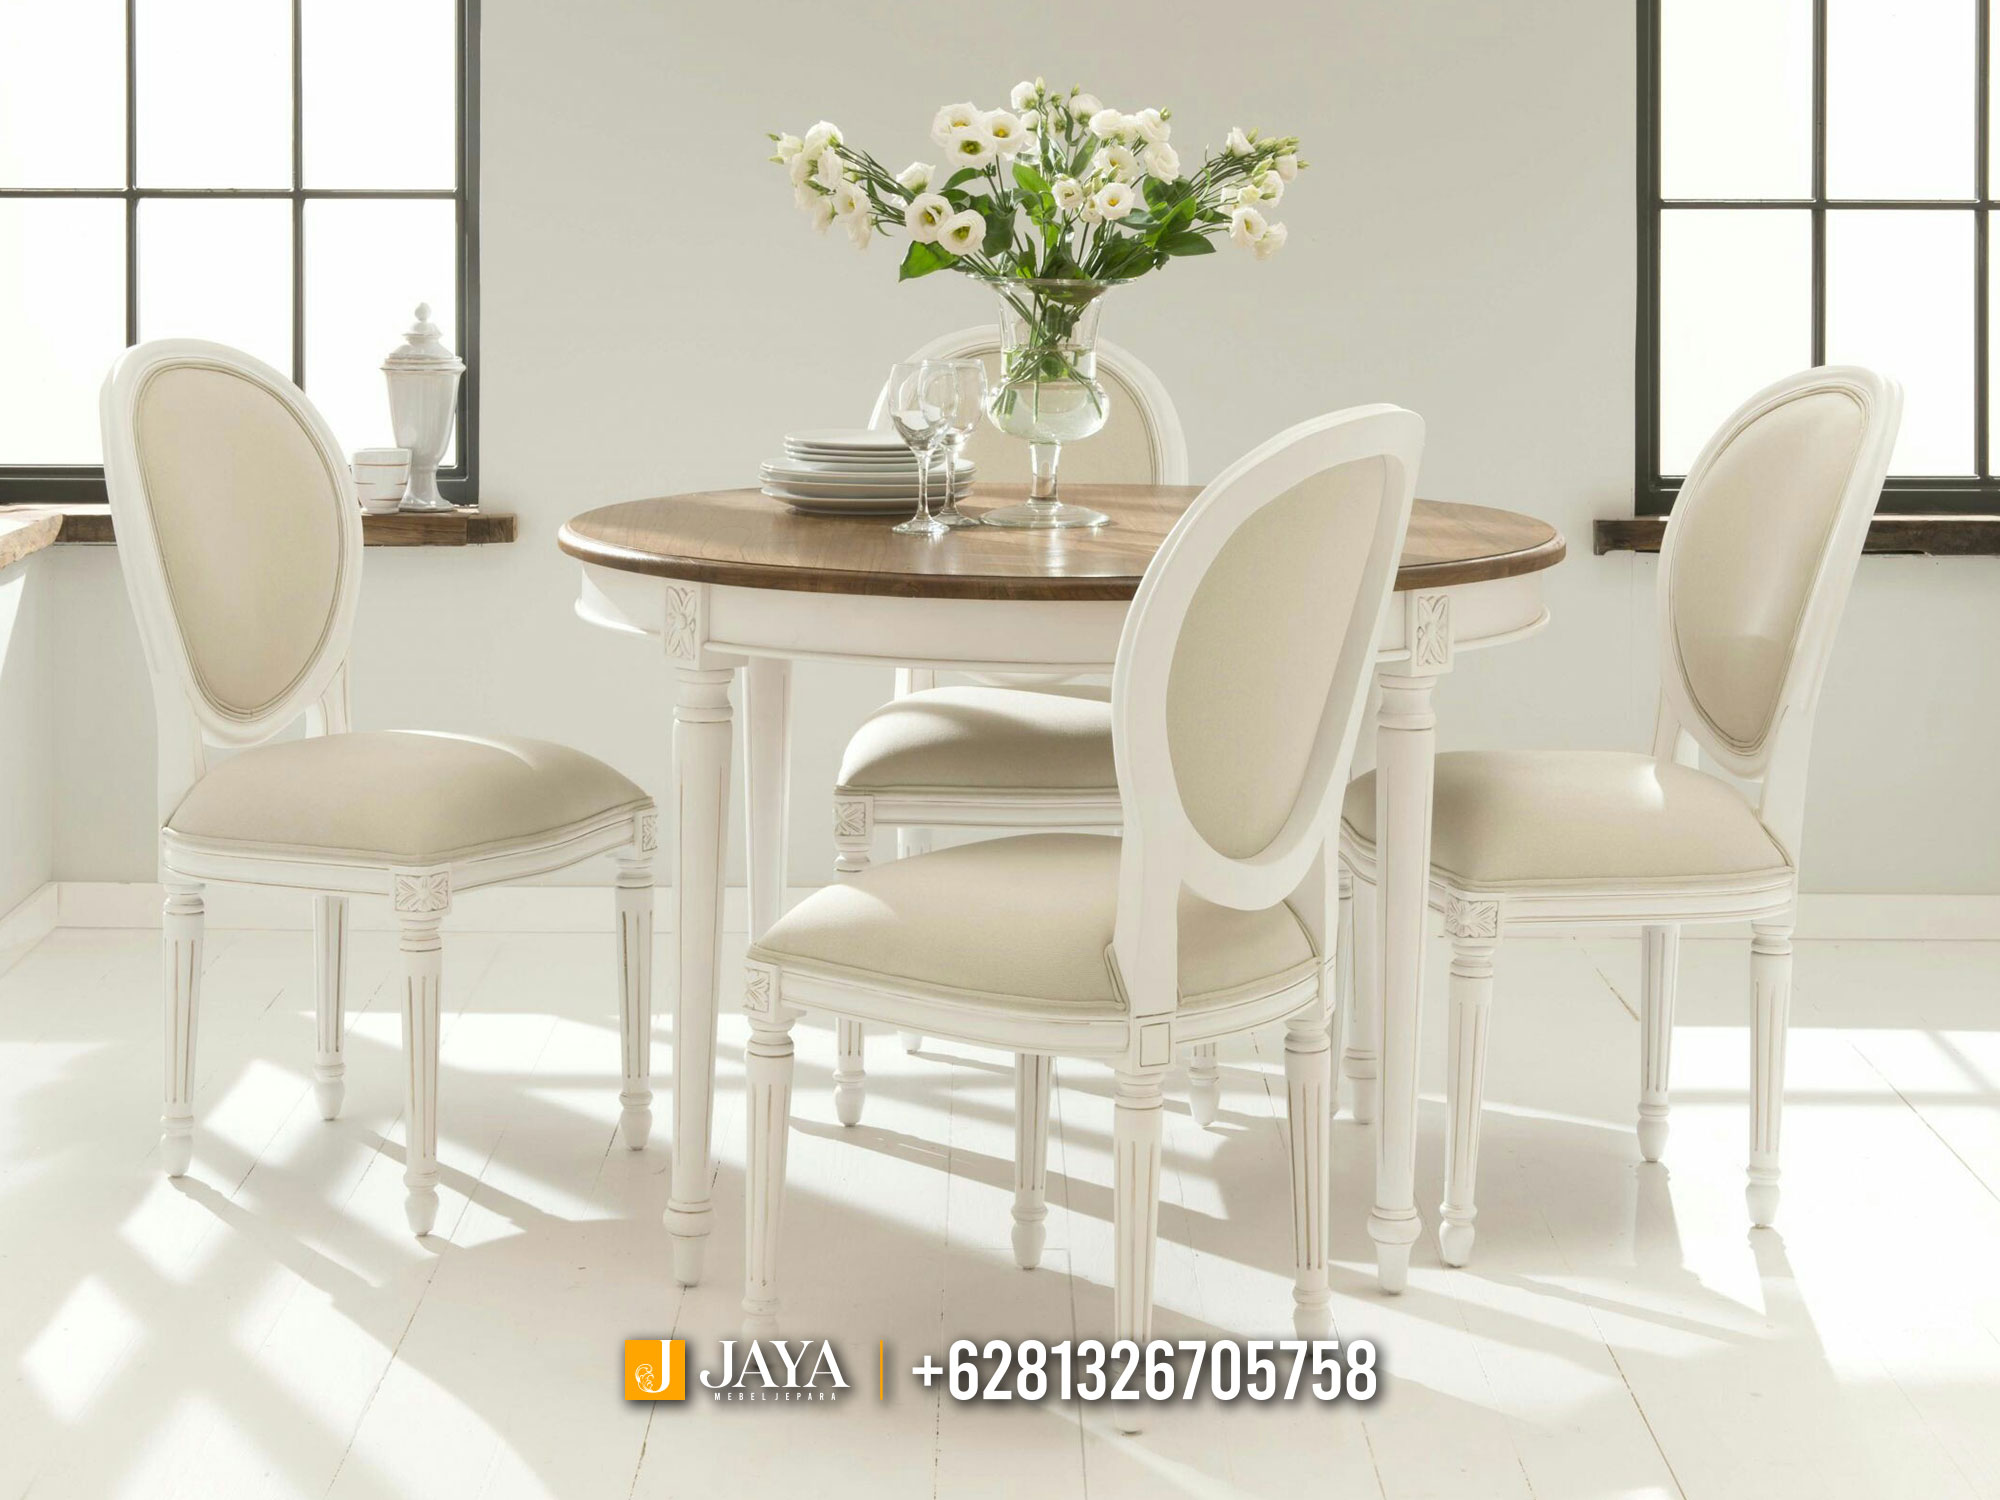 Aurora Meja Kursi Ruang Makan Minimalis Putih Unique Style JM425